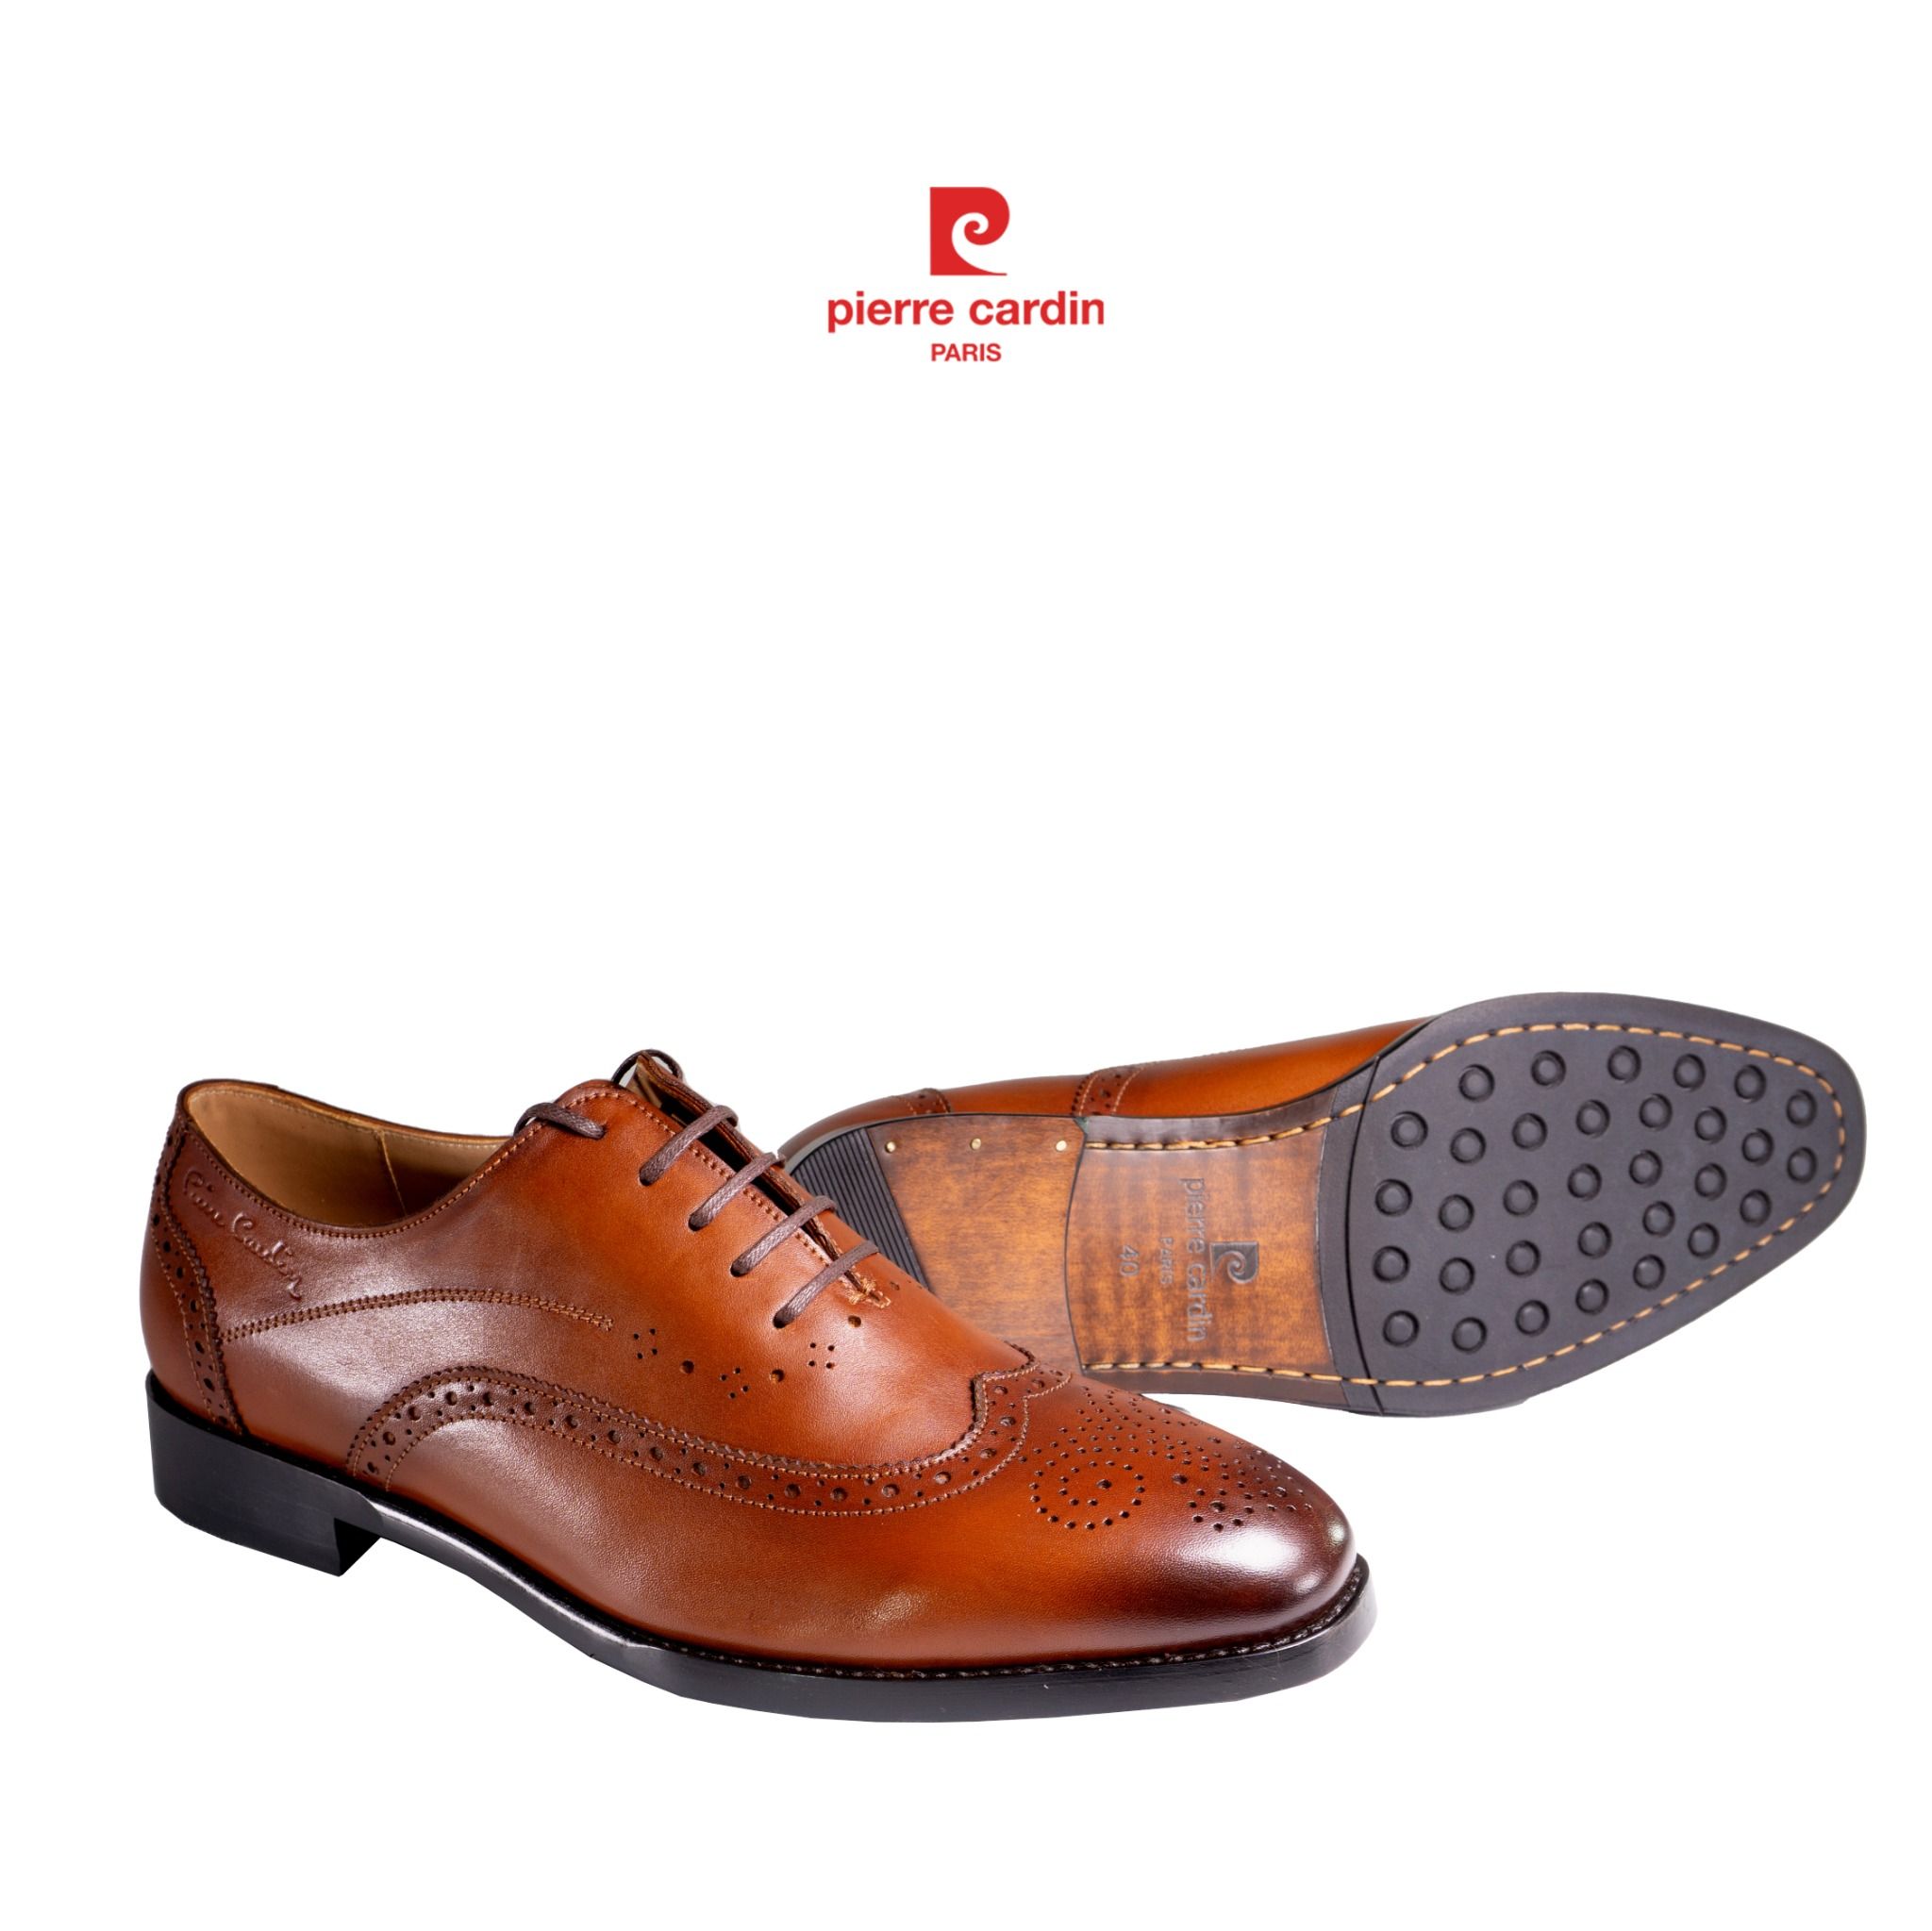 Pierre Cadin Paris Vietnam: Brogue Oxford Shoes - PCMFWLG 357 (GOLD)